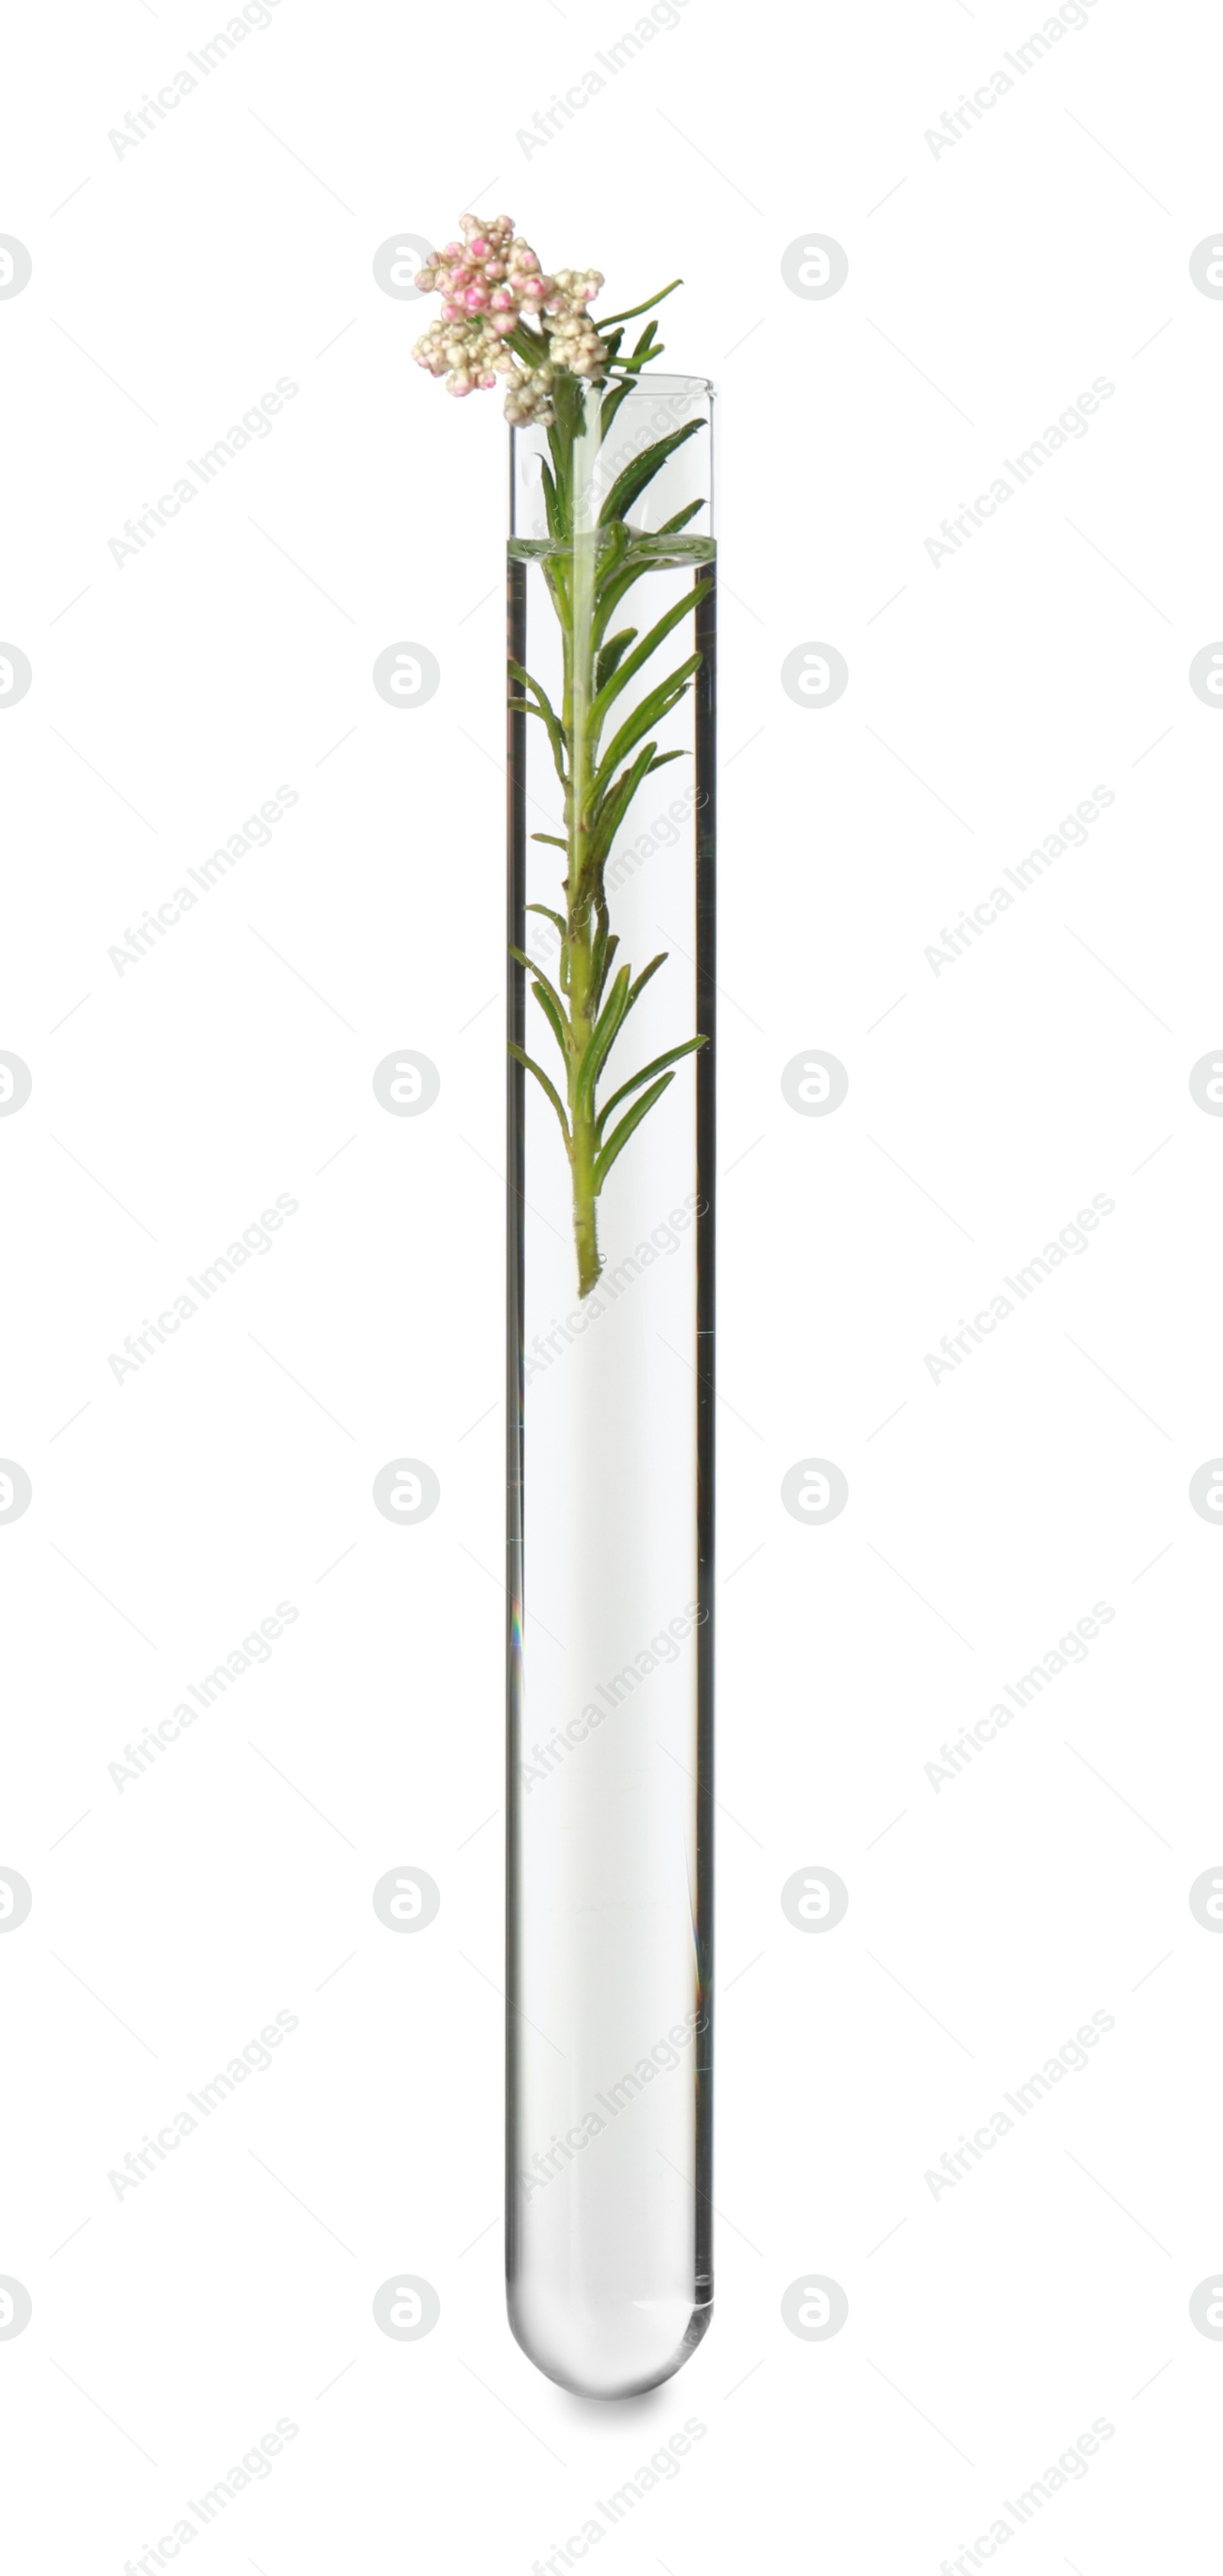 Photo of Beautiful Ozothamnus plant in test tube on white background